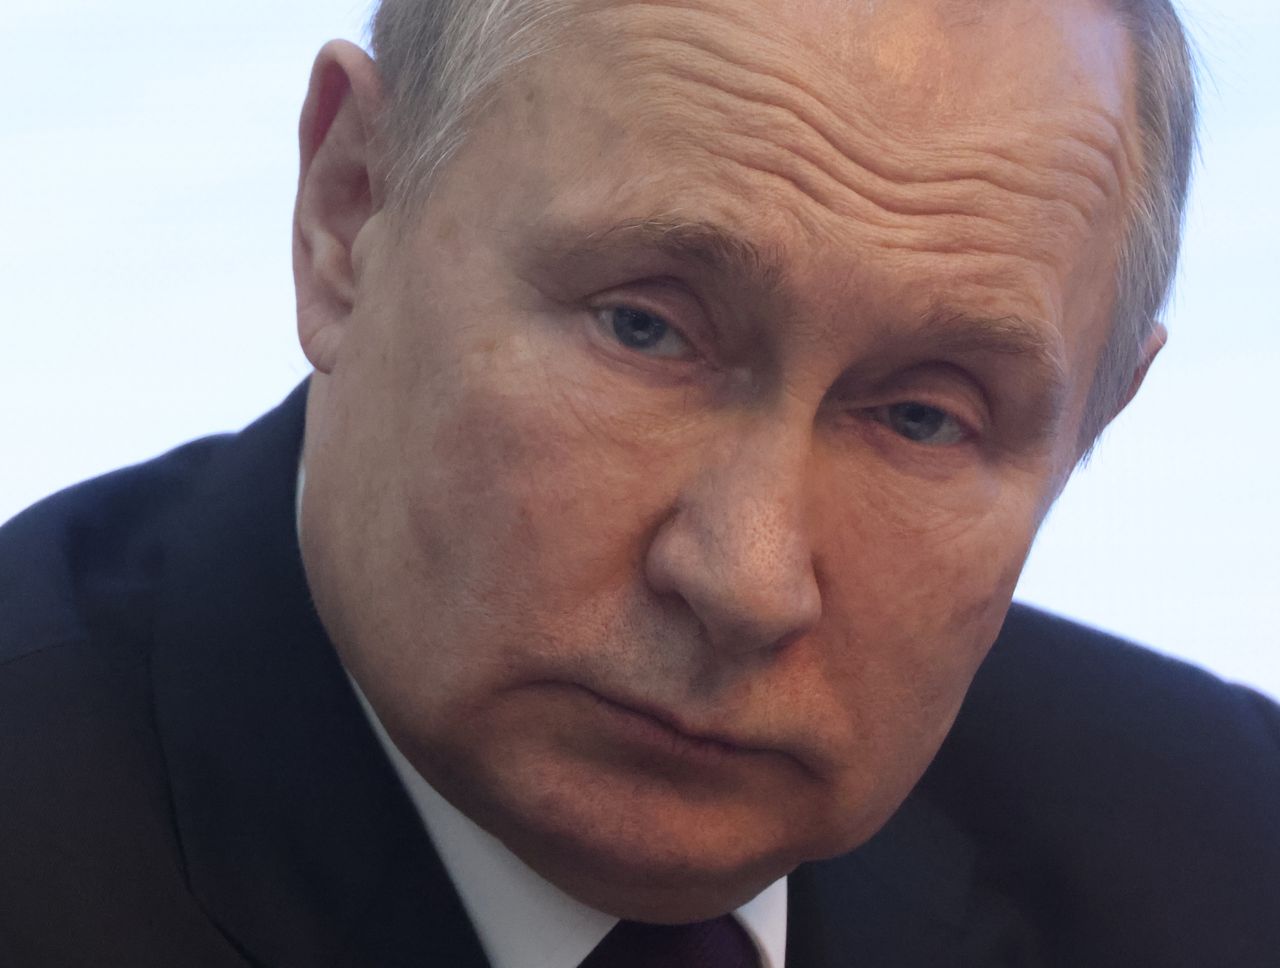 Powracają spekulacje na temat choroby prezydenta Rosji Władimira Putina